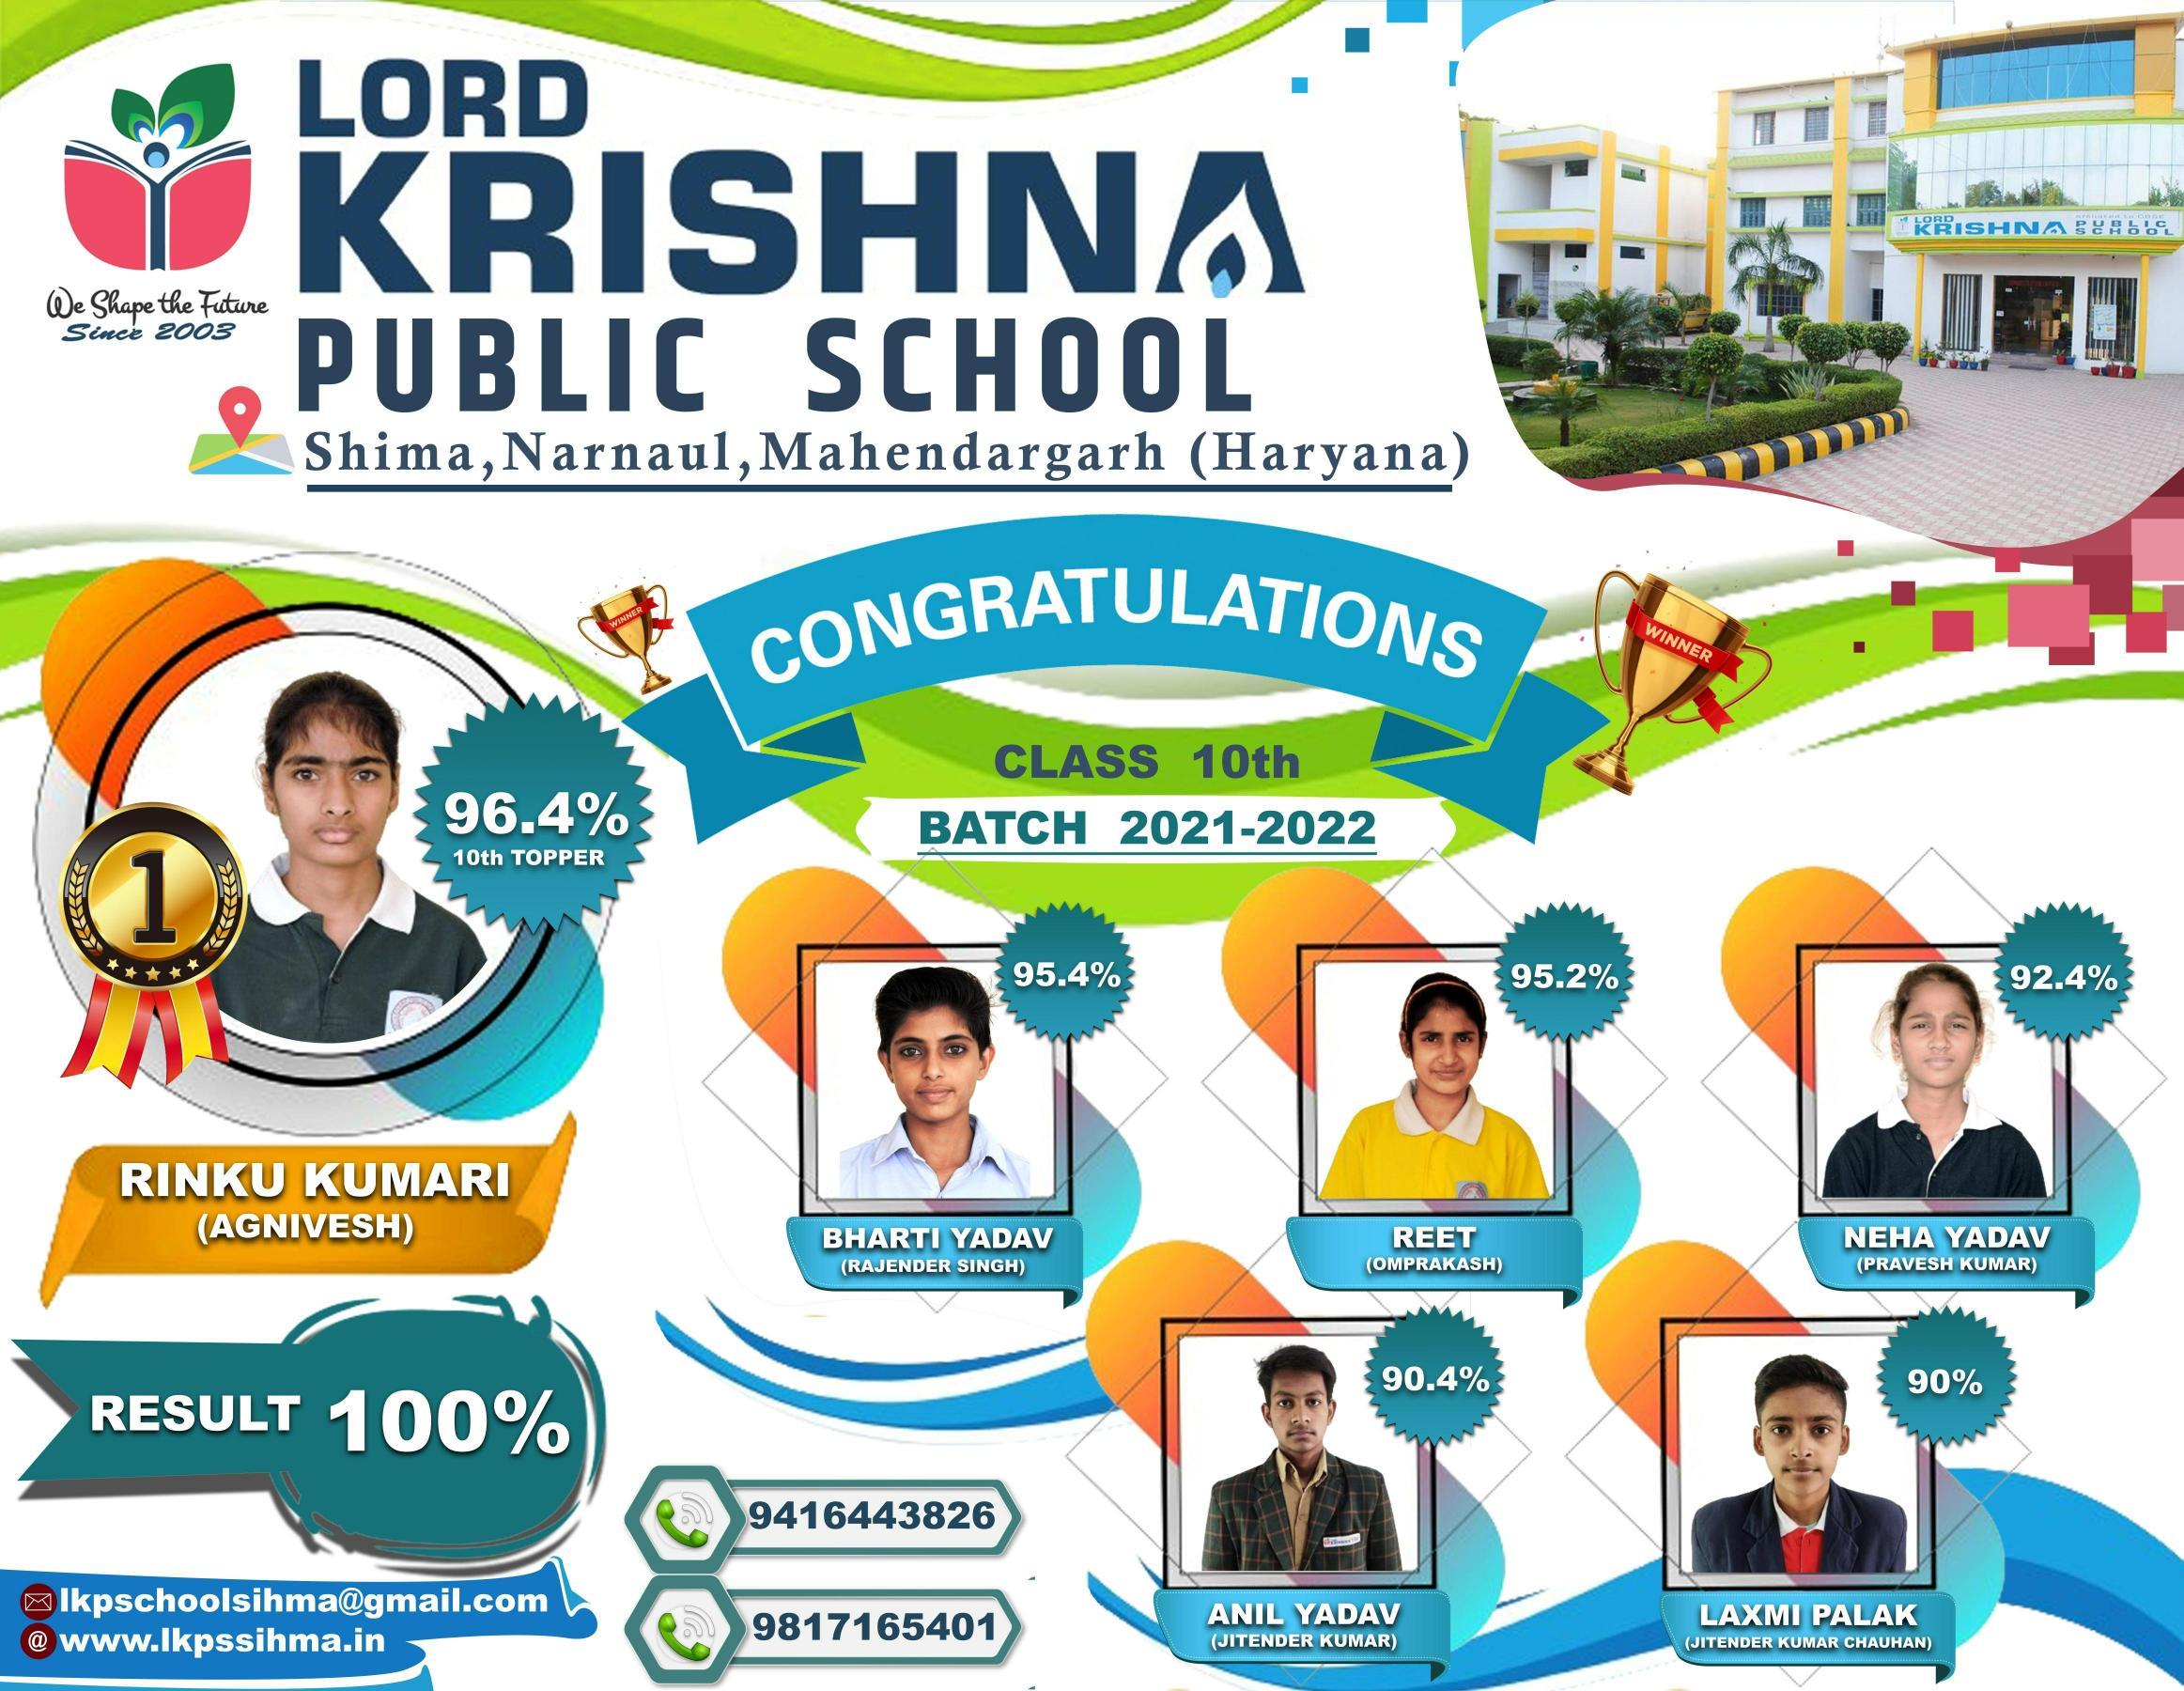 Lord krishna public school sihma